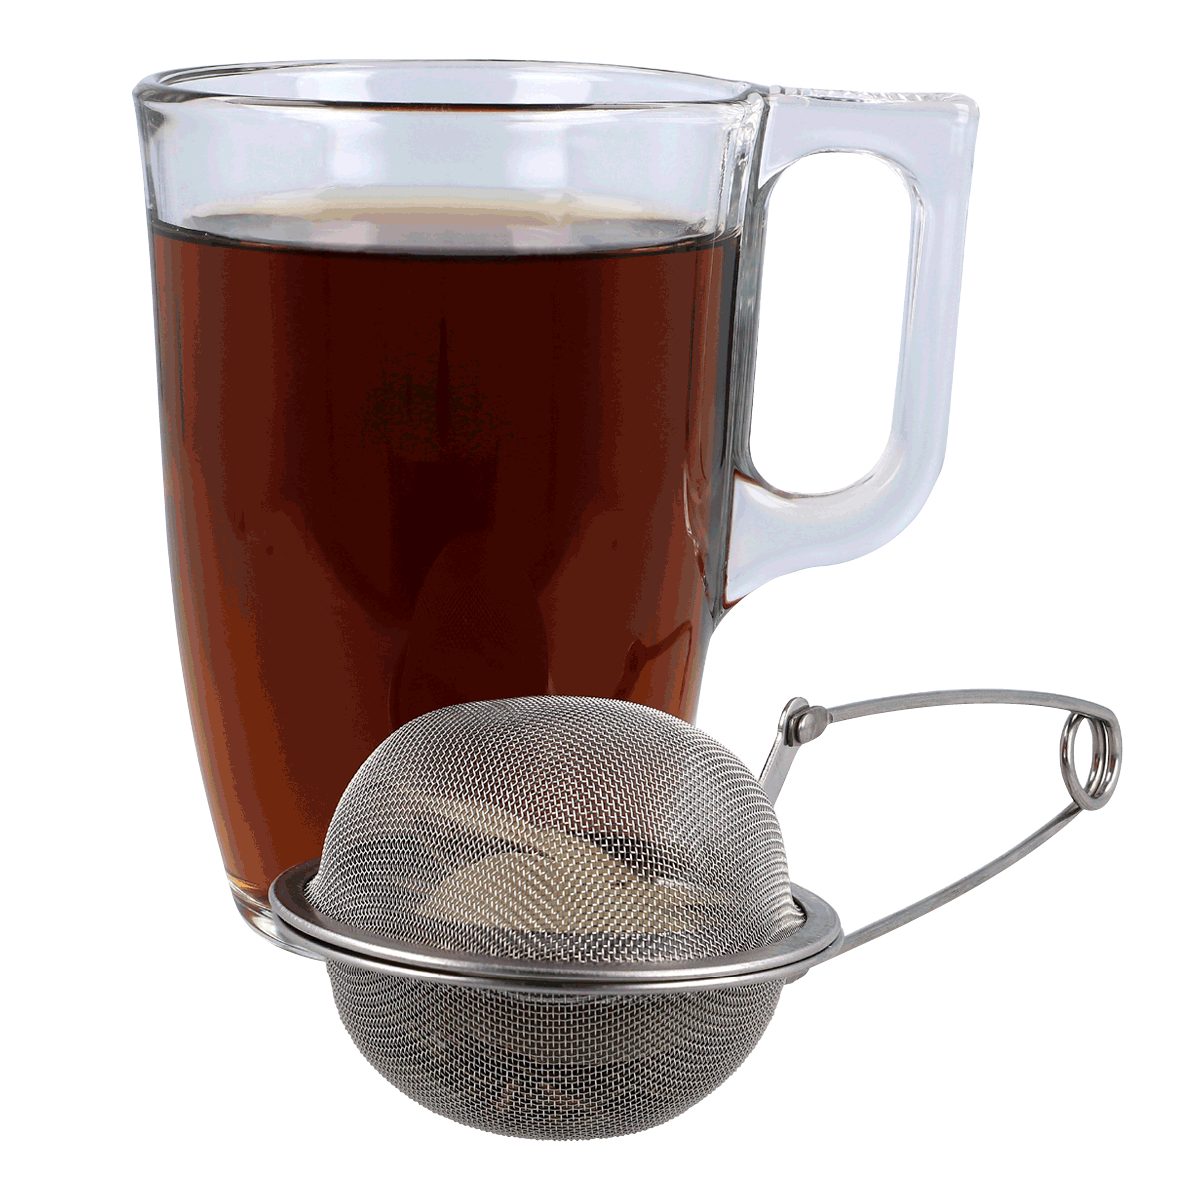 EUROHOME Teesieb Teezange mit Gewürzzange losen Ø Tee (Teesieb Edelstahl, feinem - und Ei Edelstahl Sieb Tee Sieb, 6,25 für cm)